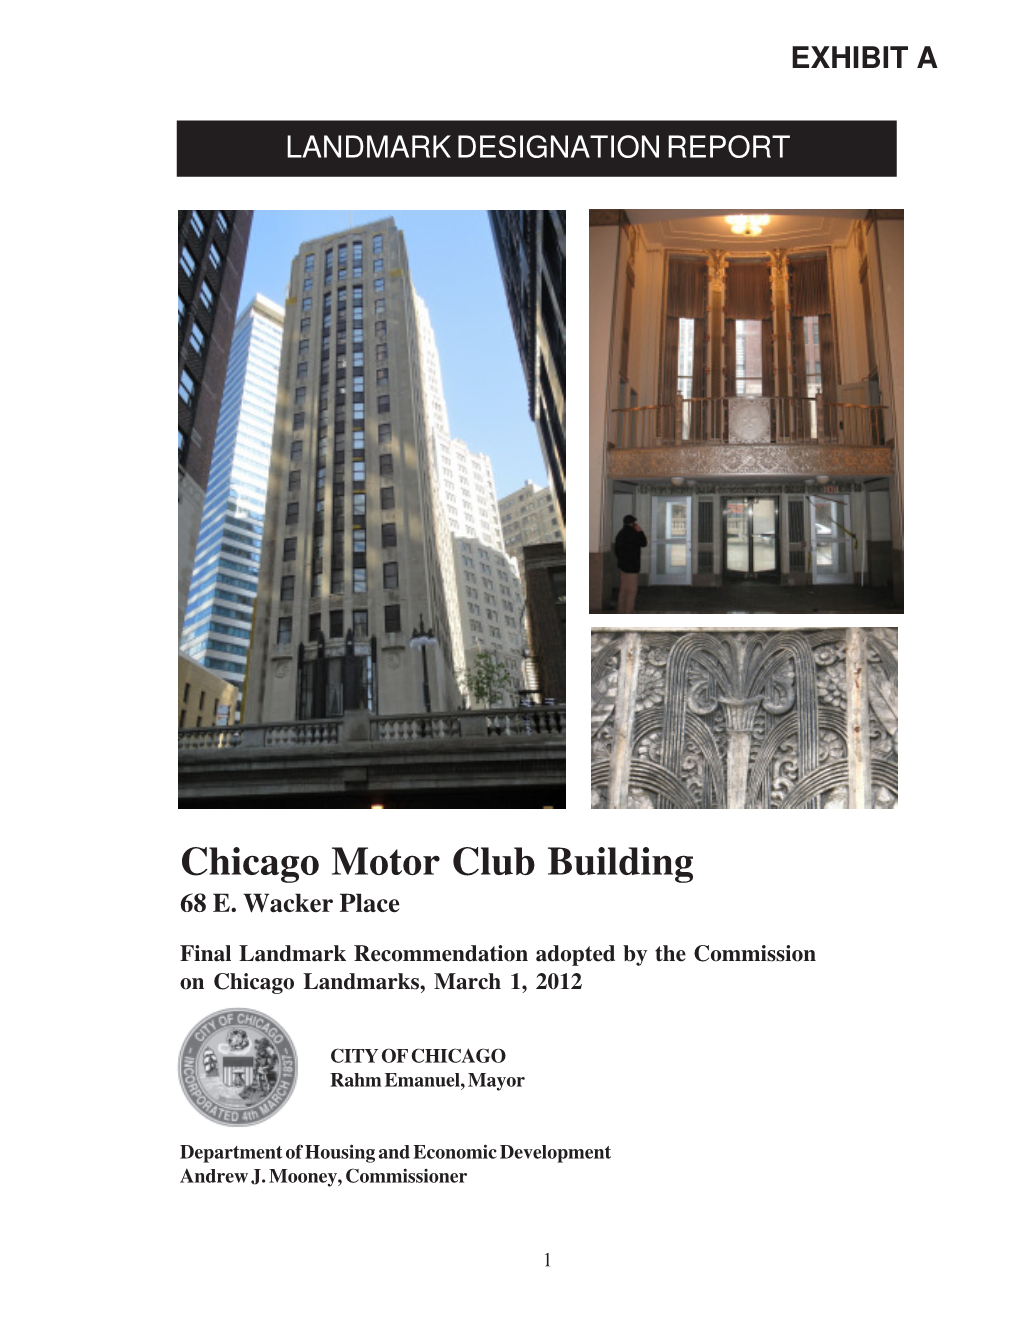 Chicago Motor Club Building 68 E